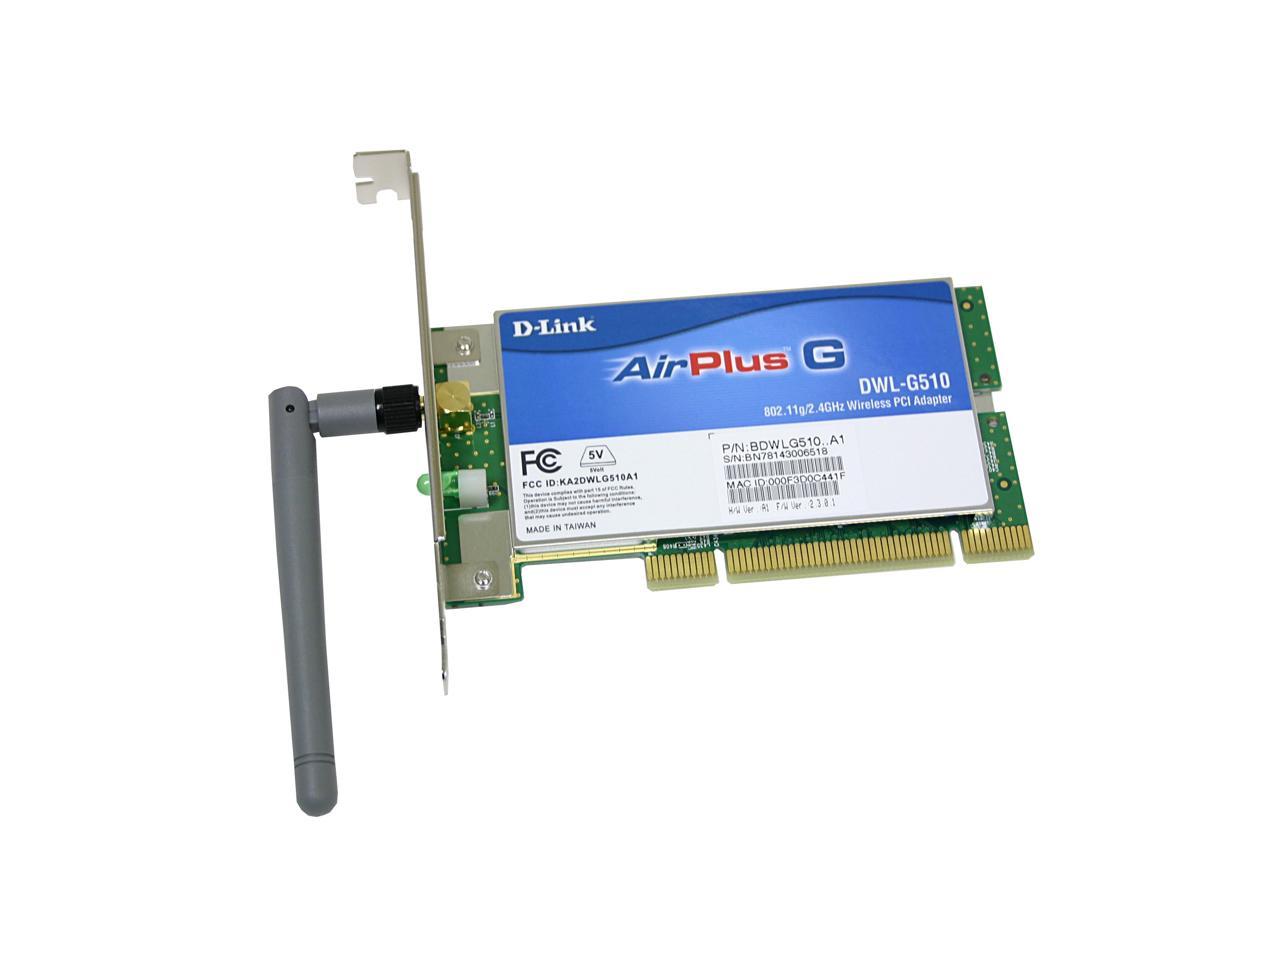 D-Link DWL-G510 32-bit PCI High Speed Wireless Adapter Newegg.com